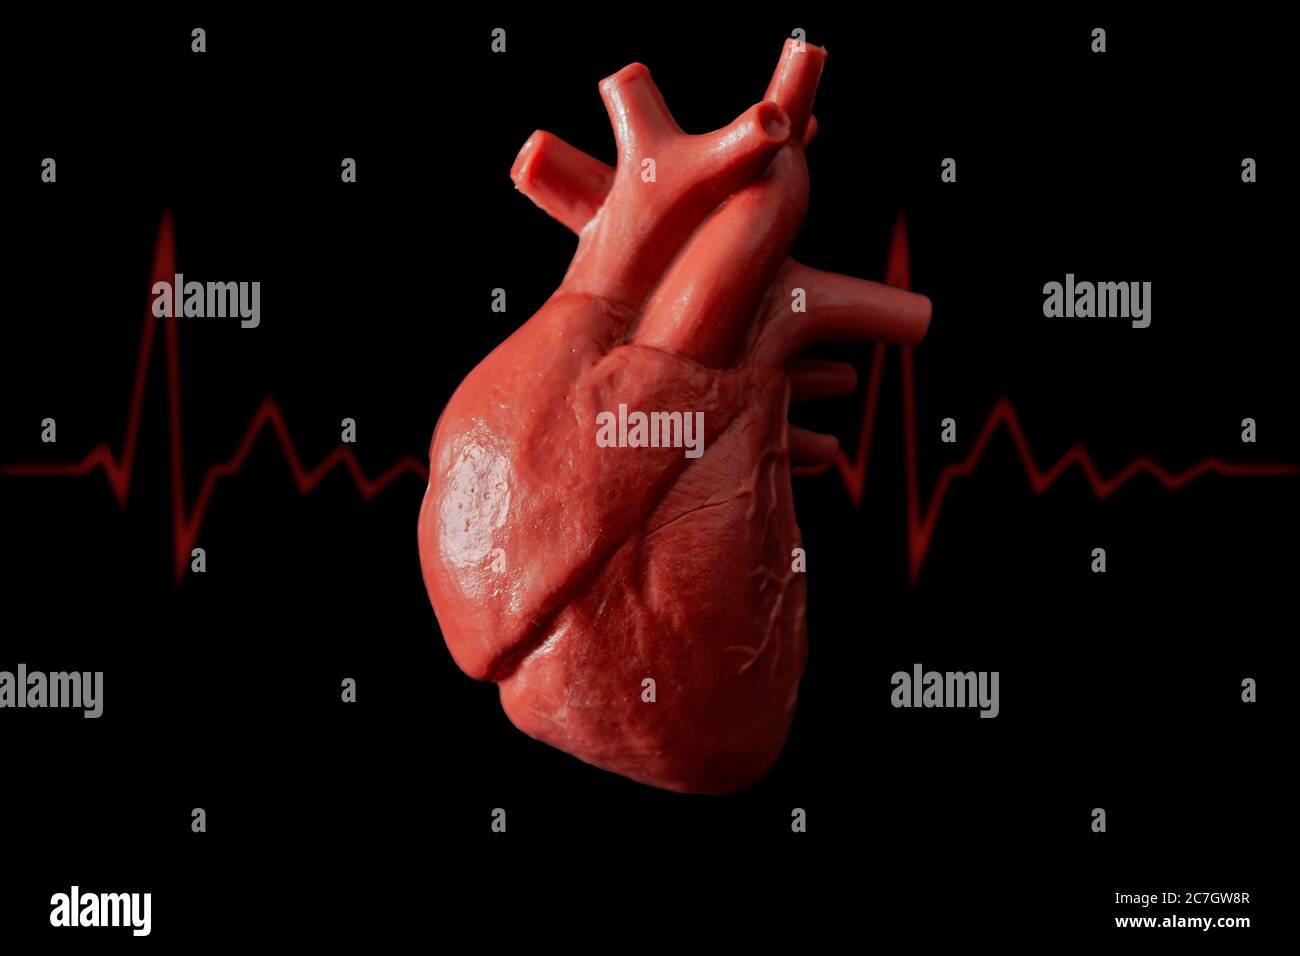 Kardiologie, Organtransplantation und kardiovaskuläre Medizin Konzept mit einem plastischen medizinischen Modell eines Herzens isoliert auf schwarzem Hintergrund mit hoher Kontras Stockfoto